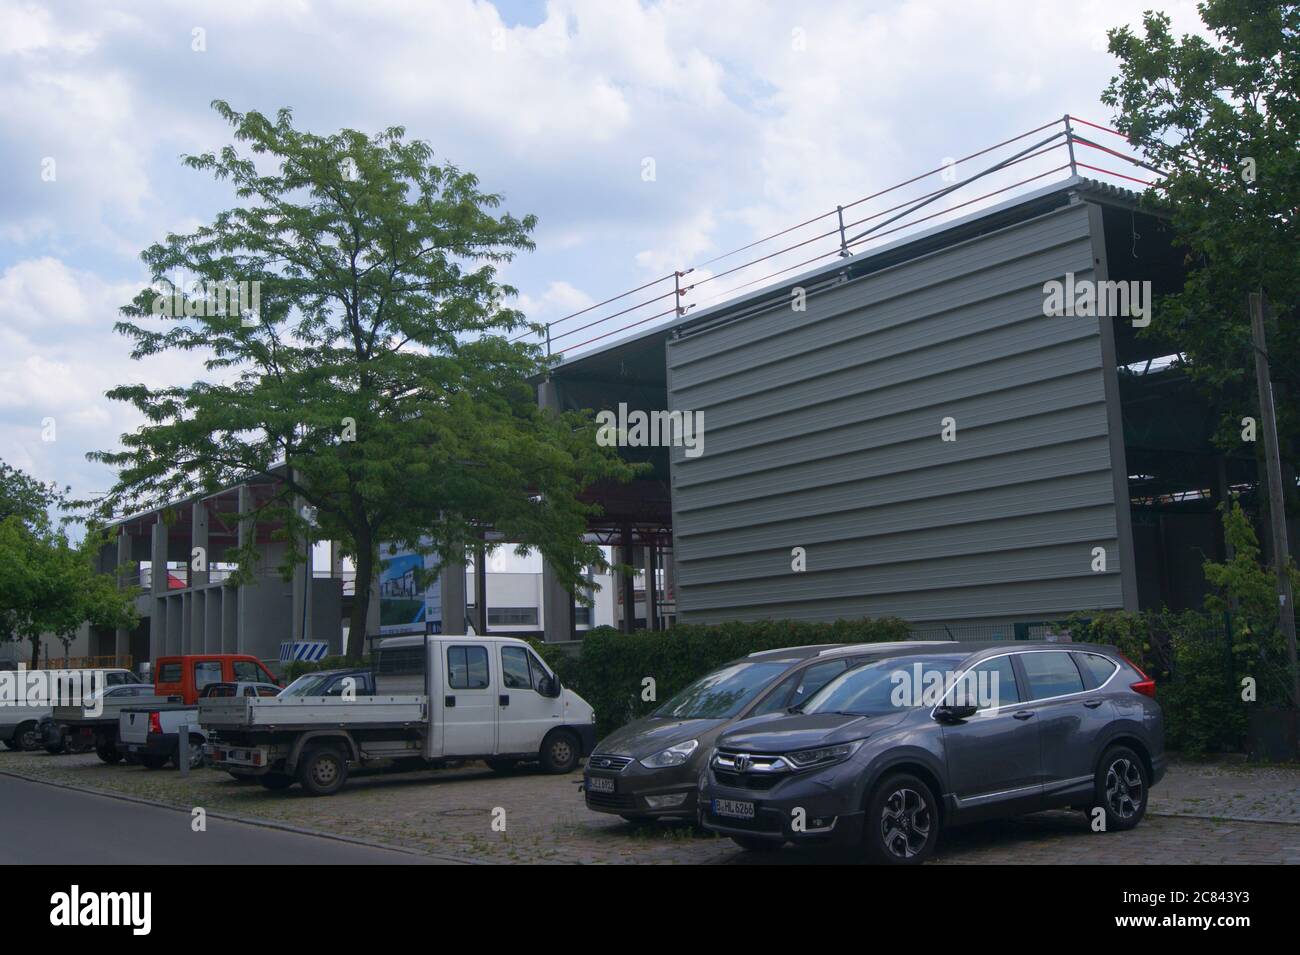 Entwicklung des Gewerbeparks City Dock in der Altonaer Straße in Berlin-Spandau. Stock Photo